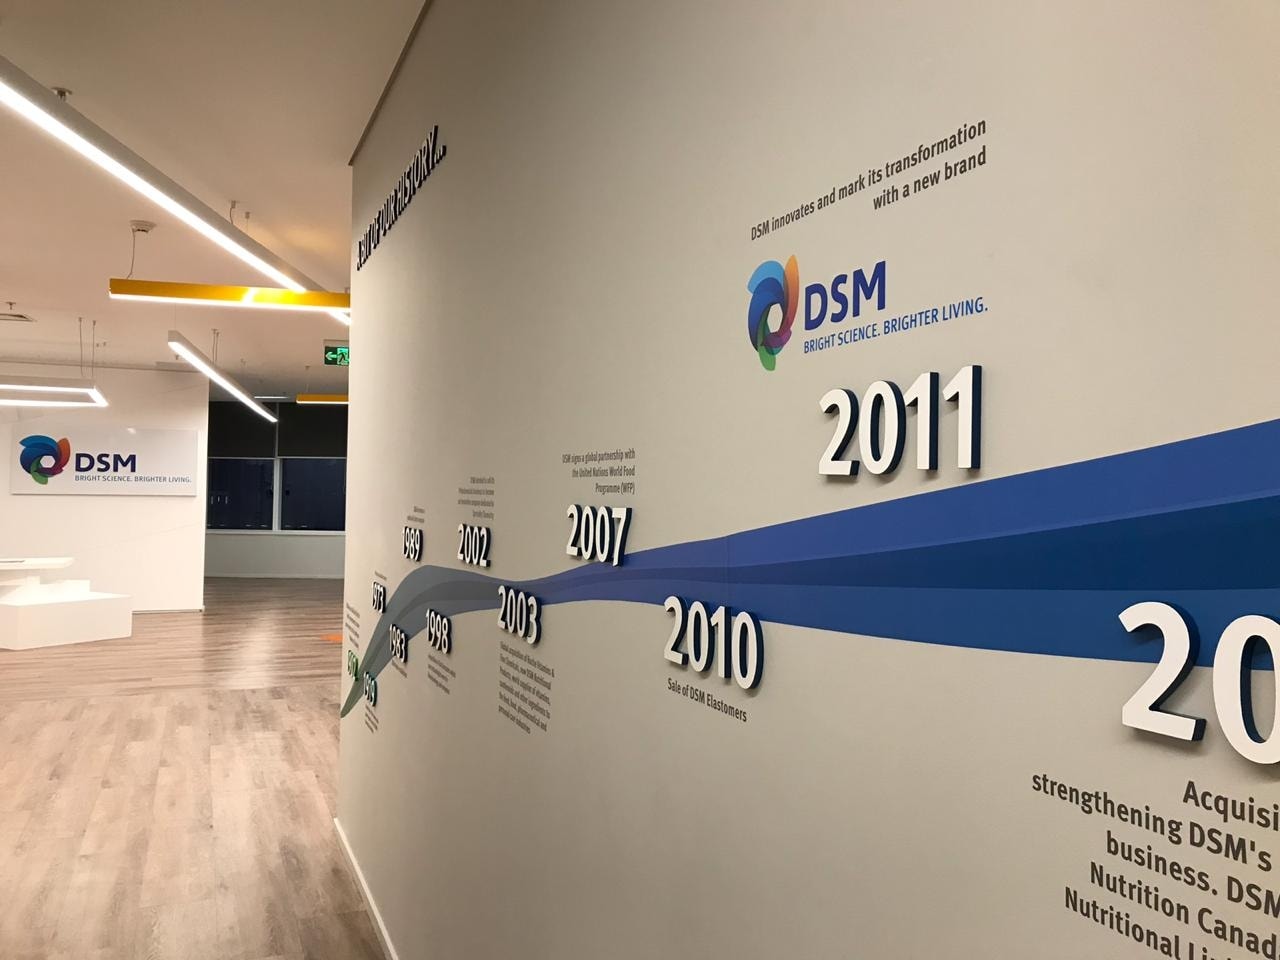 Foto de una pared blanca con el logotipo de D S M y una línea de tiempo que representa momentos importantes de la historia de D S M.